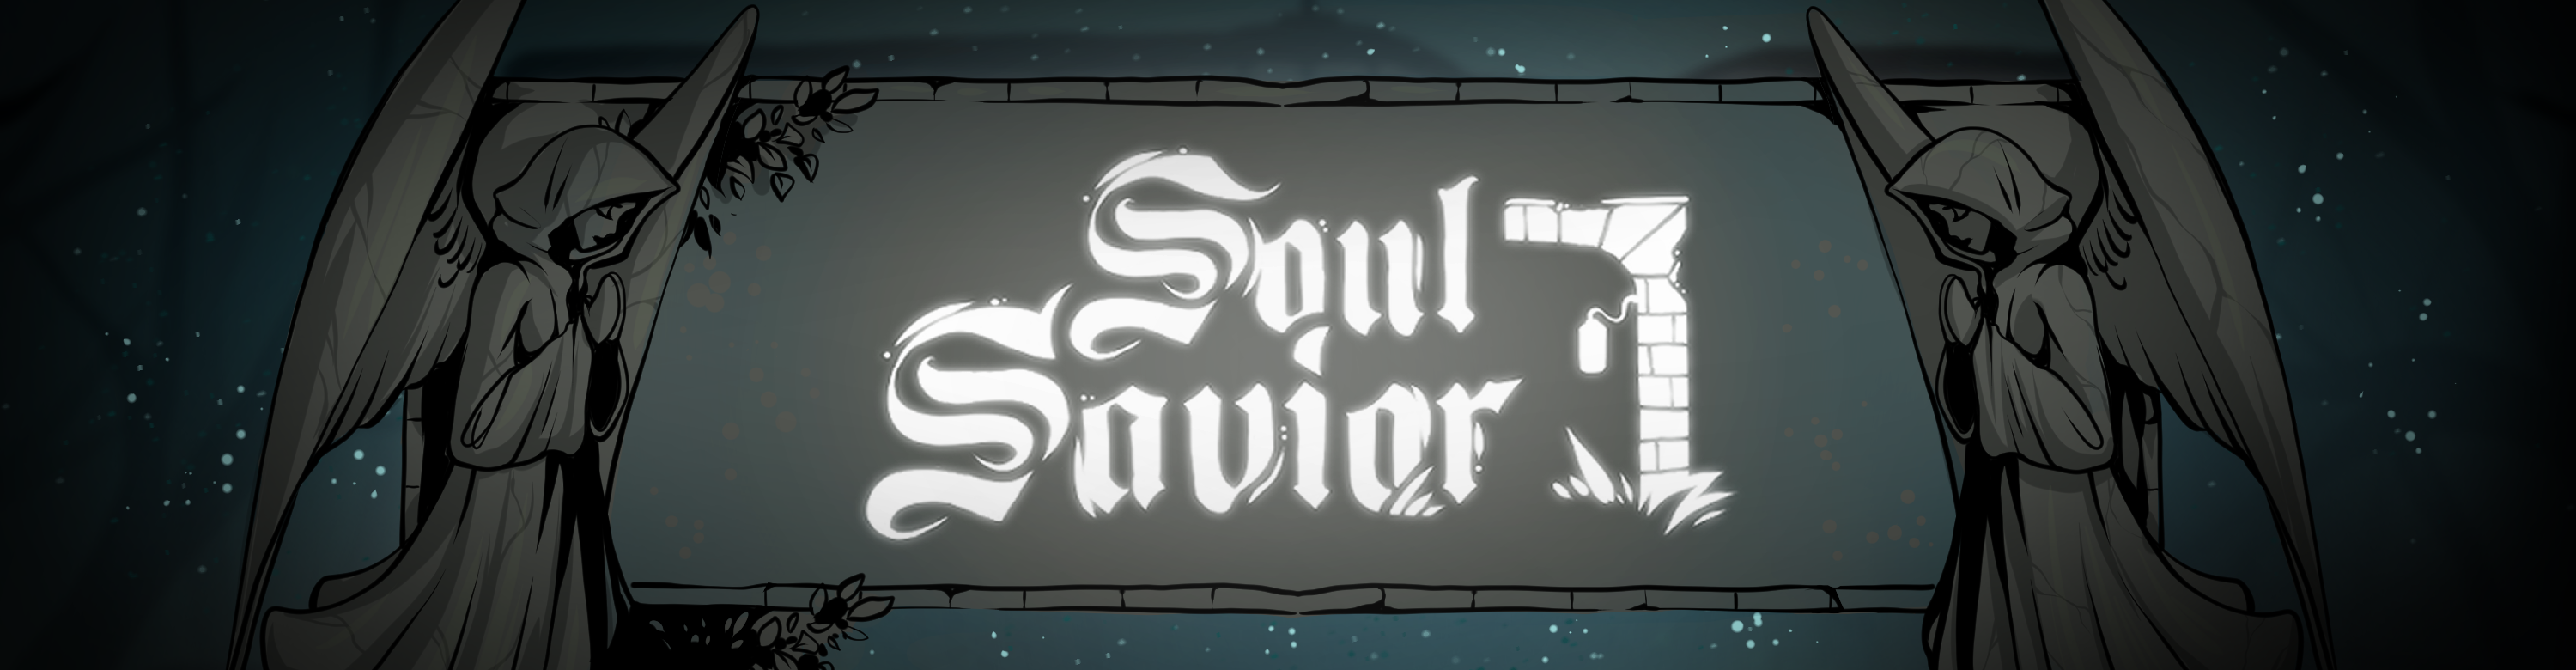 Soul Savior